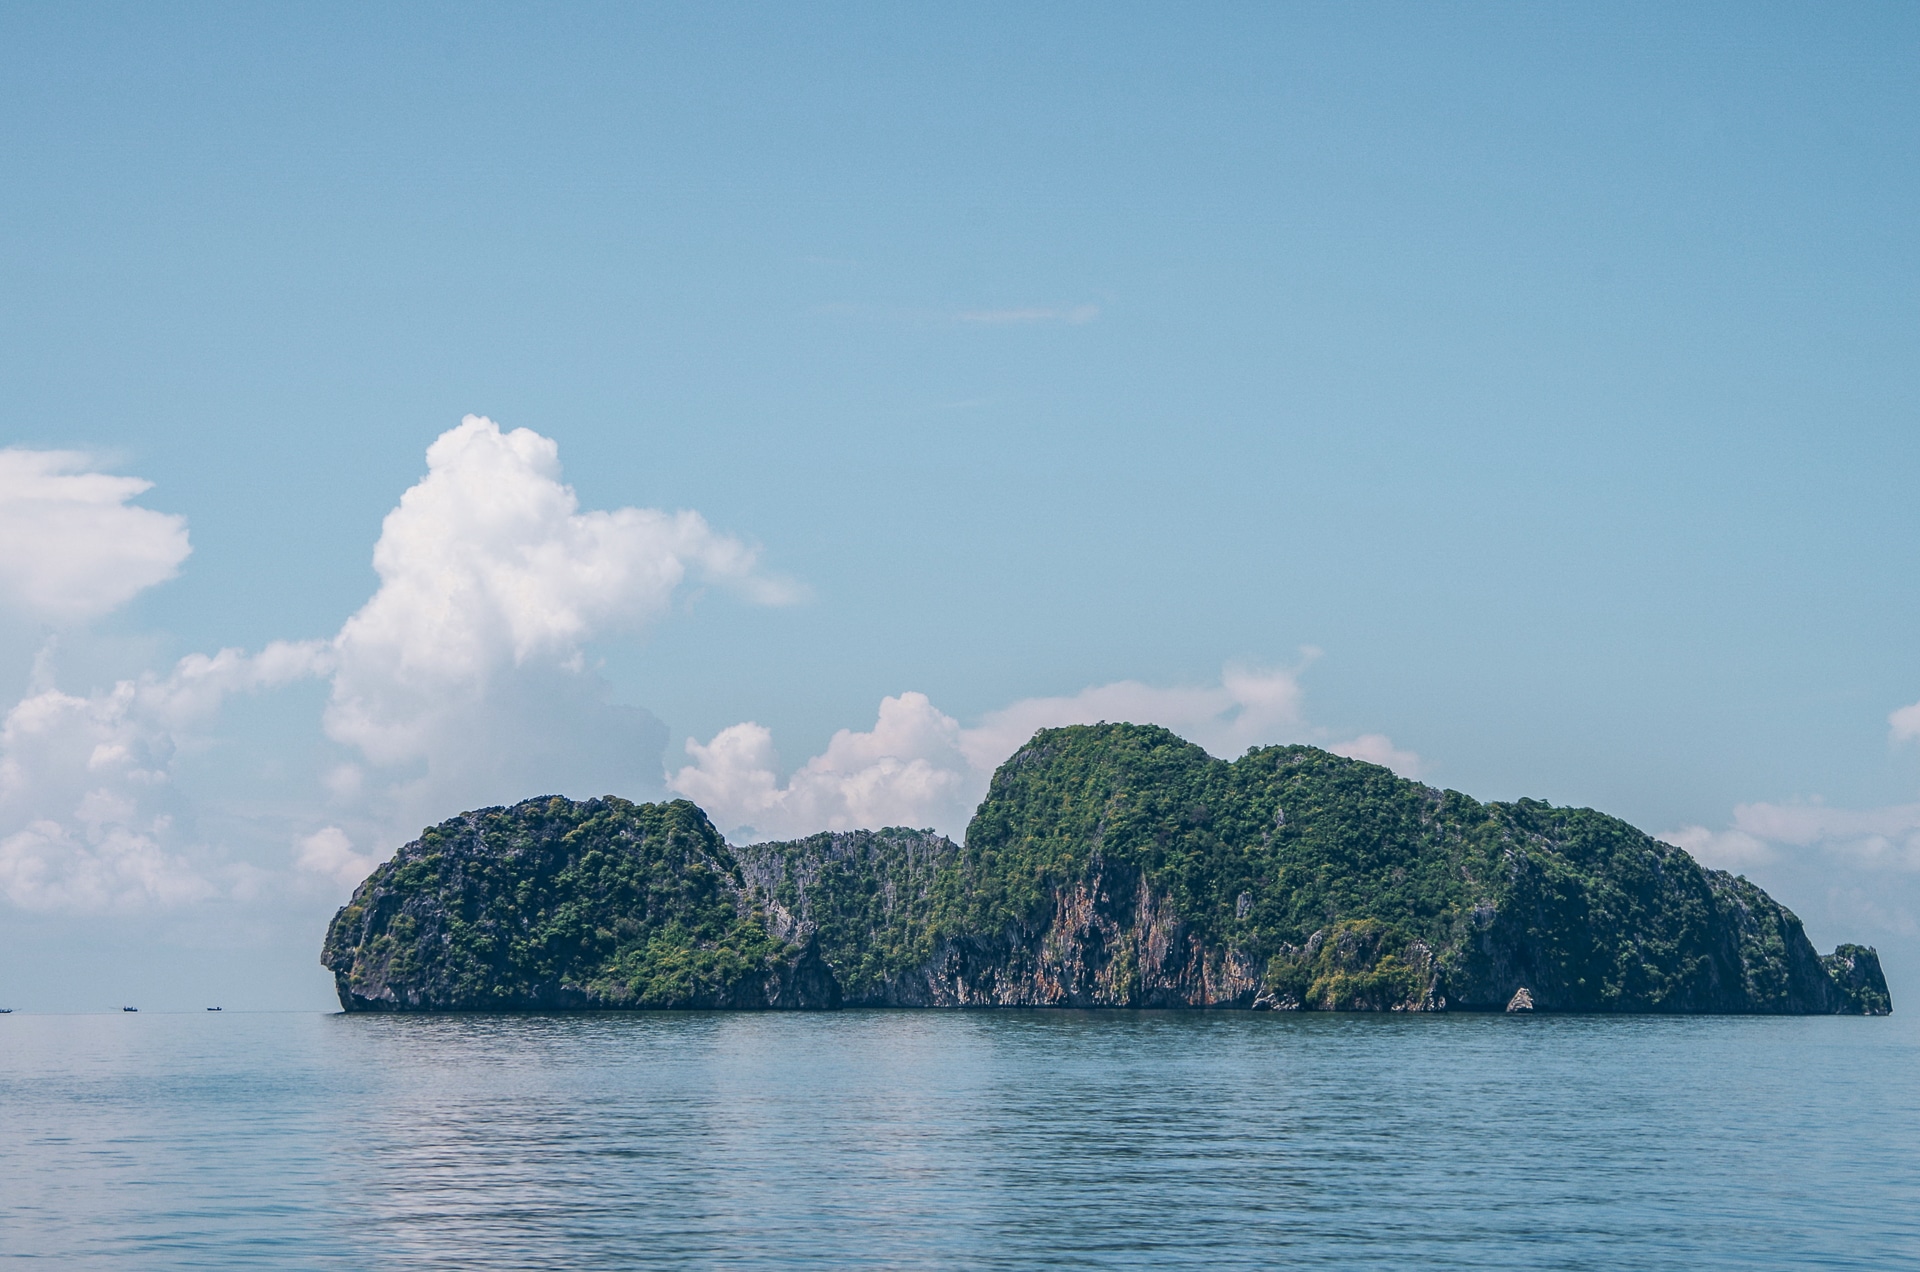 île recouverte de végétation en plein milieu de l'archipel des Mergui Kawthaung